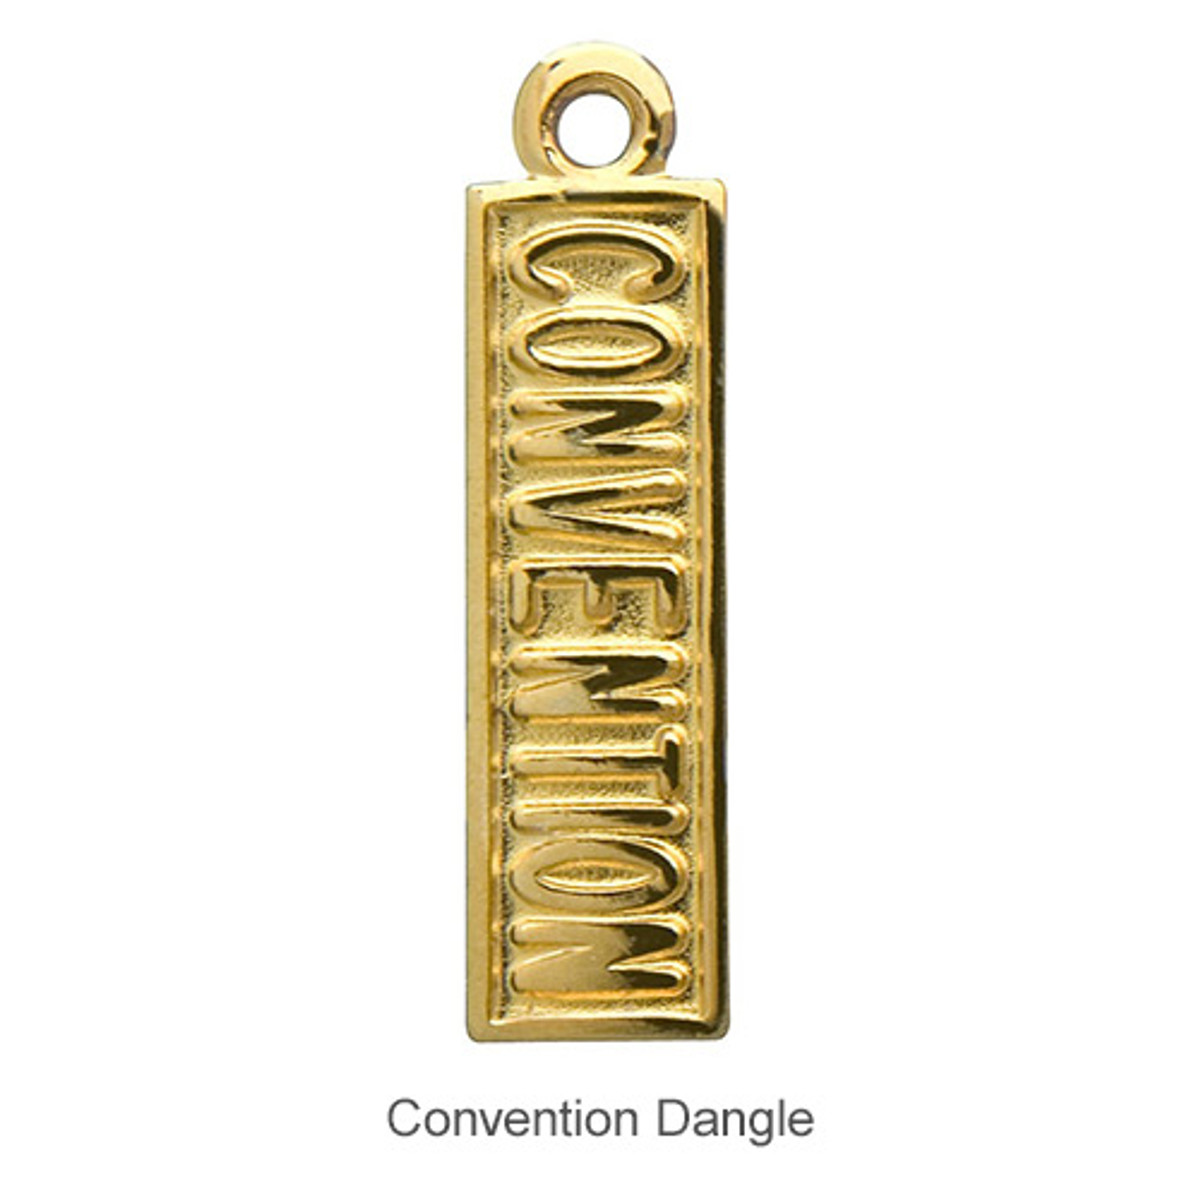 Delta Zeta Convention Dangle